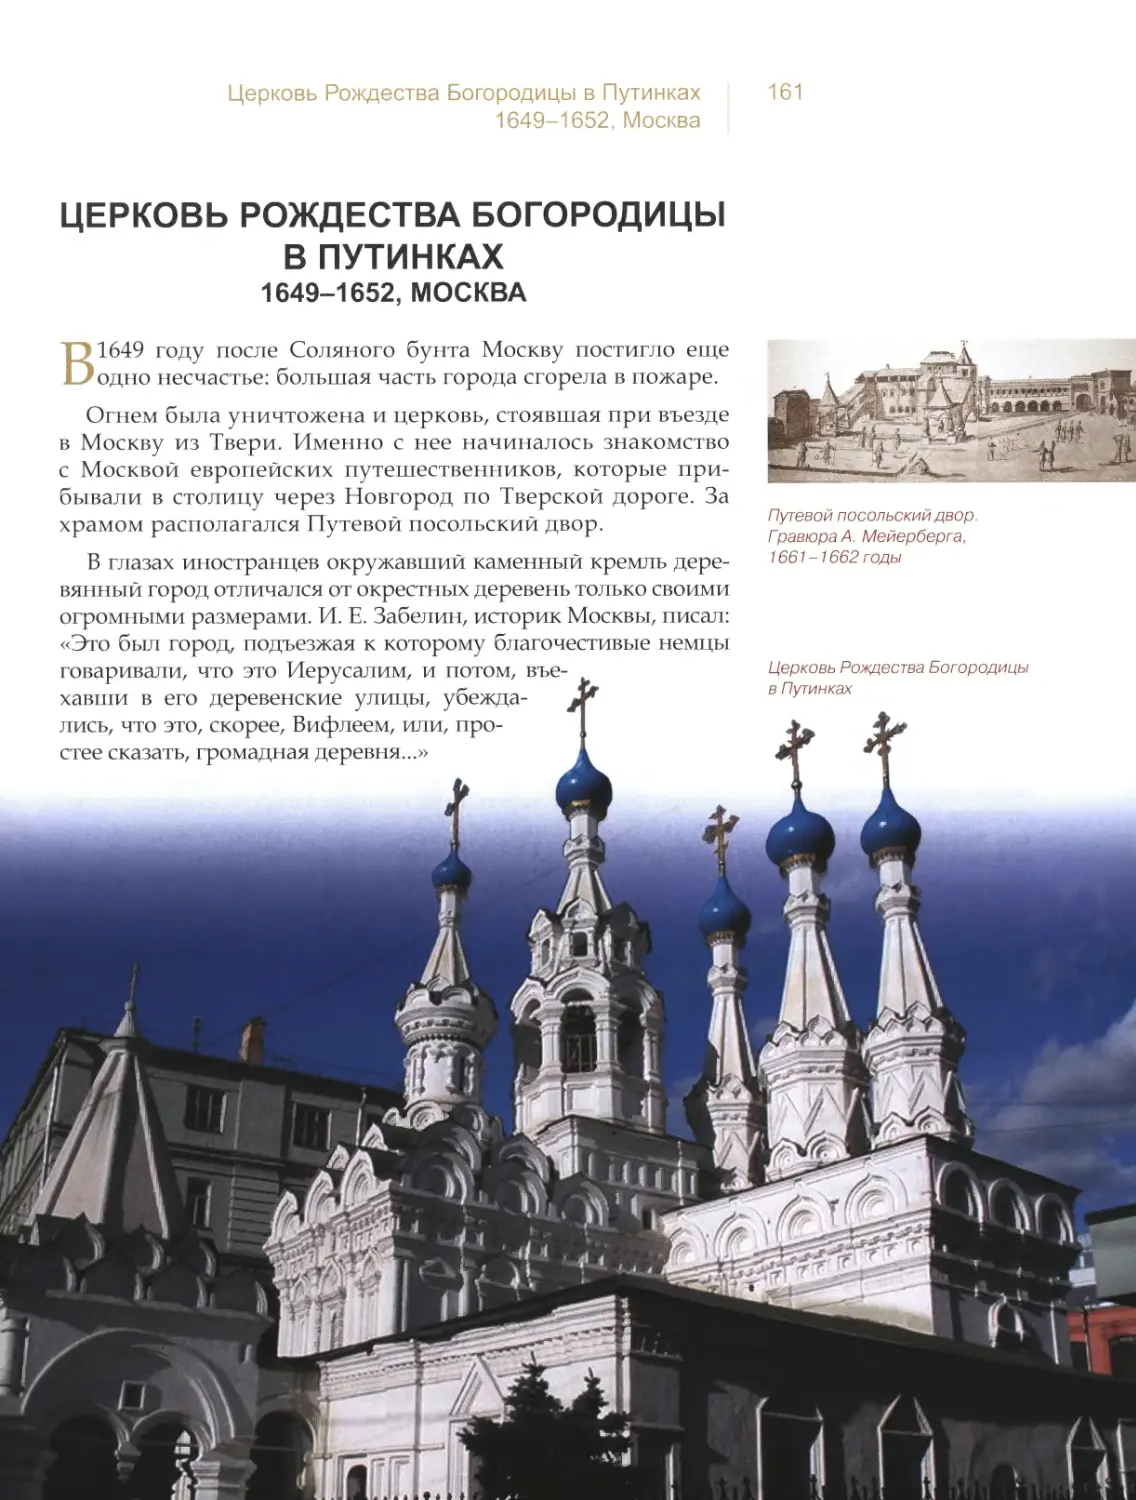 Церковь Рождества Богородицы в Путинках, Москва